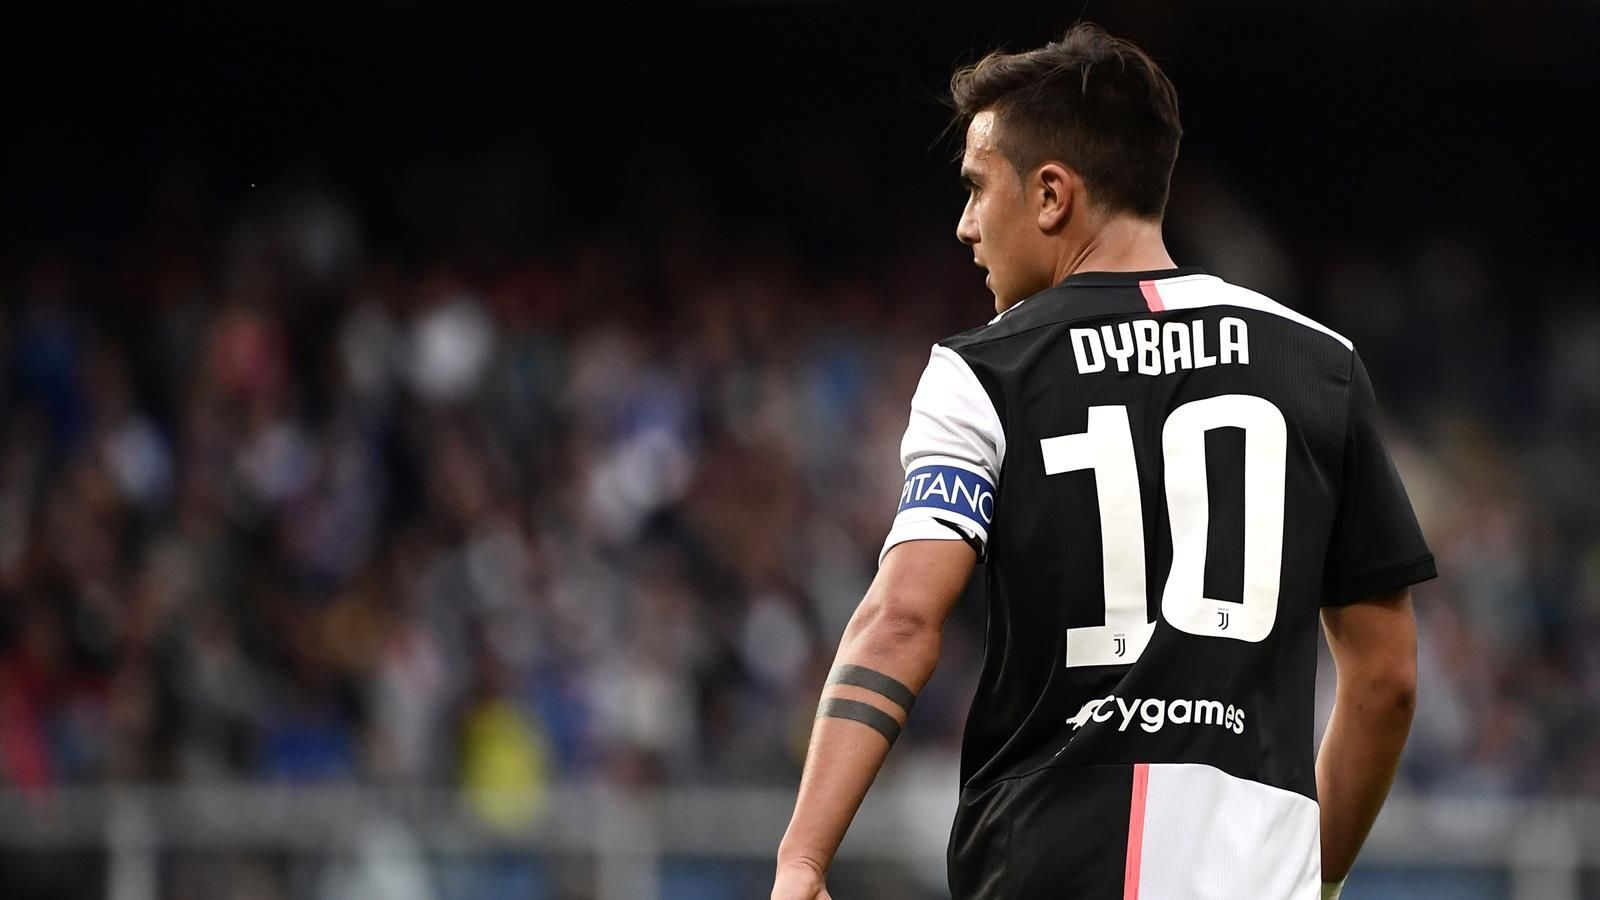 Dybala May Miss Juventus’ Match against Lyon